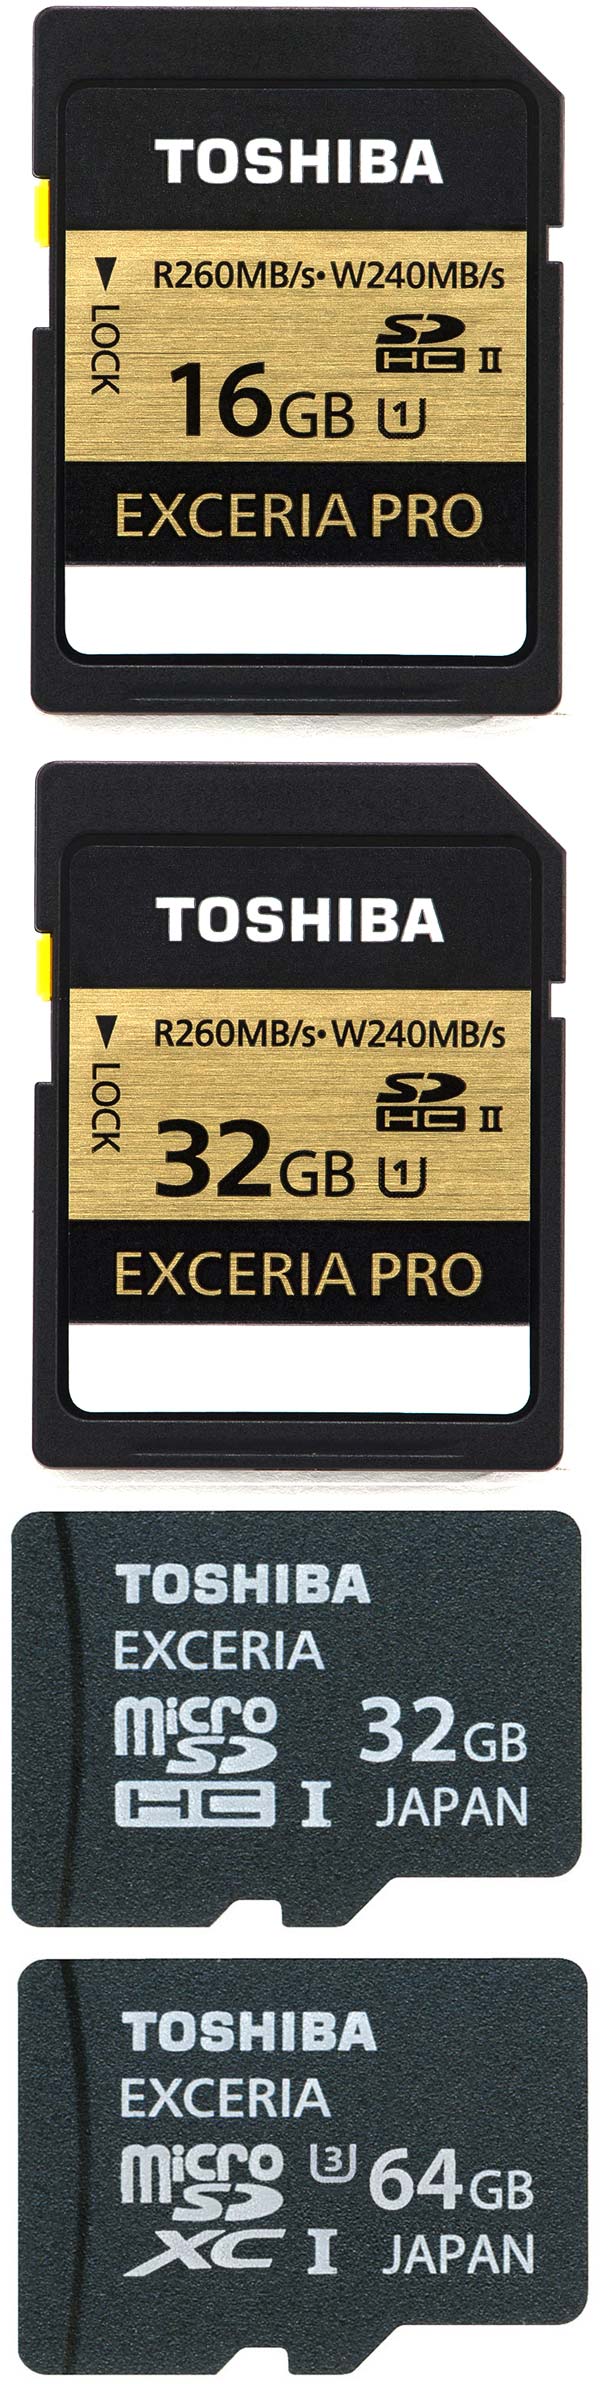 Карточки памяти Toshiba Exceria Pro SD и Exceria microSD